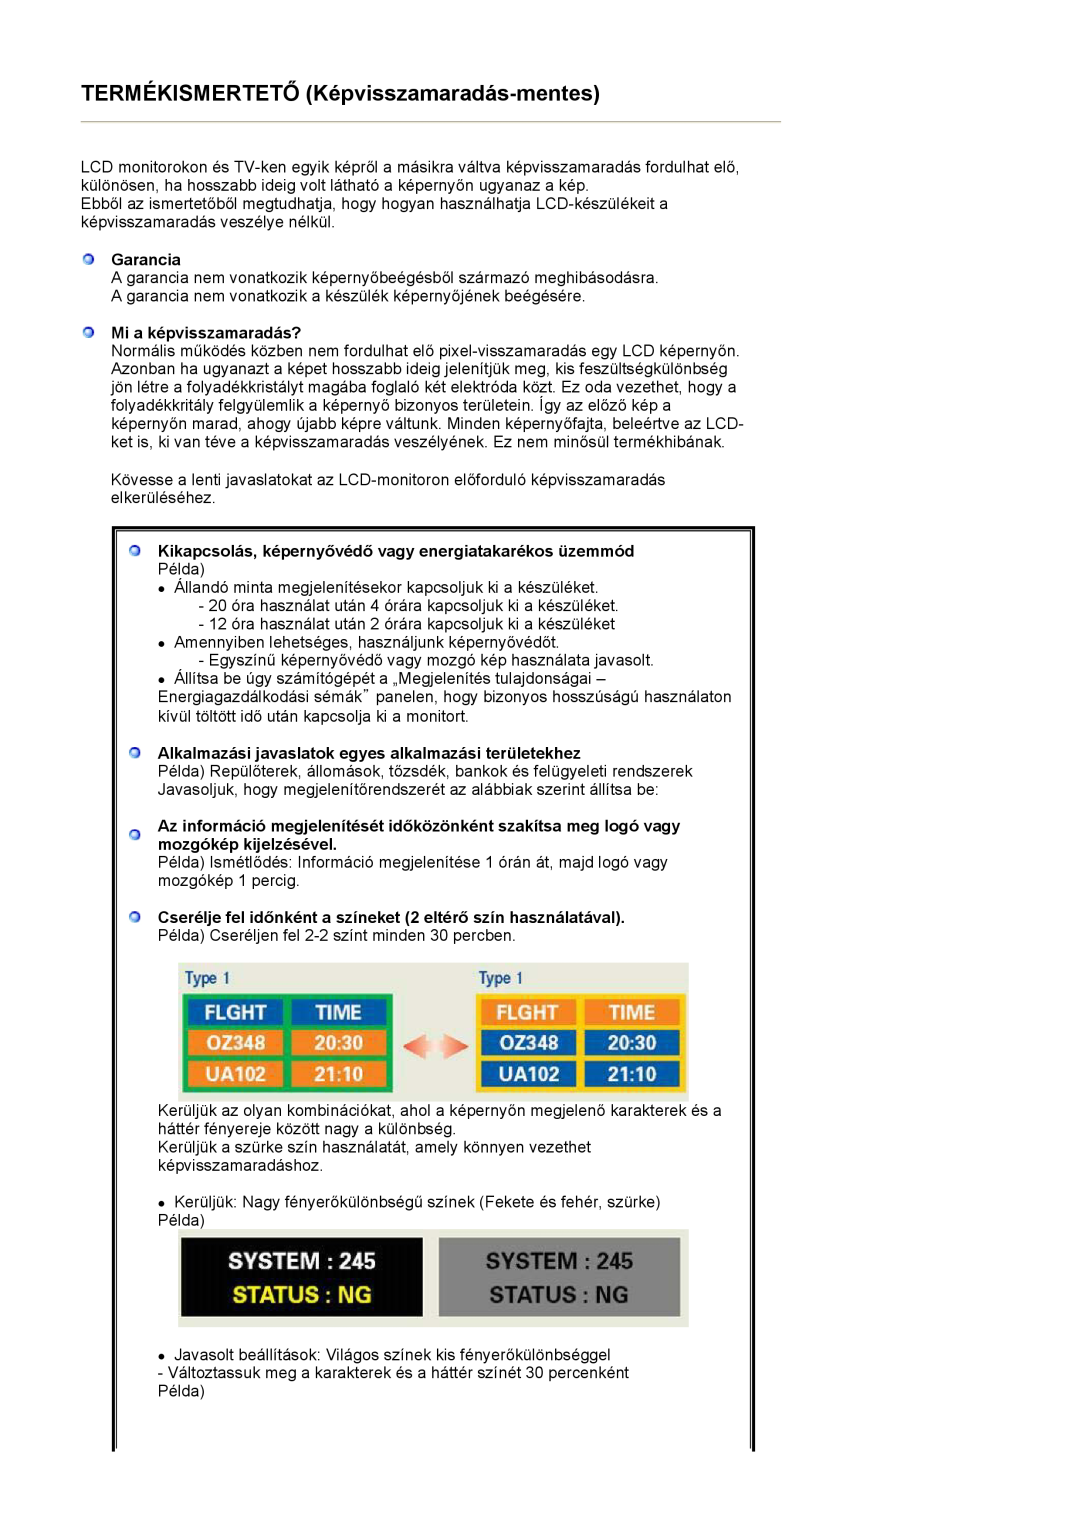 Samsung LS27HUBCBS/EDC manual Garancia, Mi a képvisszamaradás?, Kikapcsolás, képernyővédő vagy energiatakarékos üzemmód 